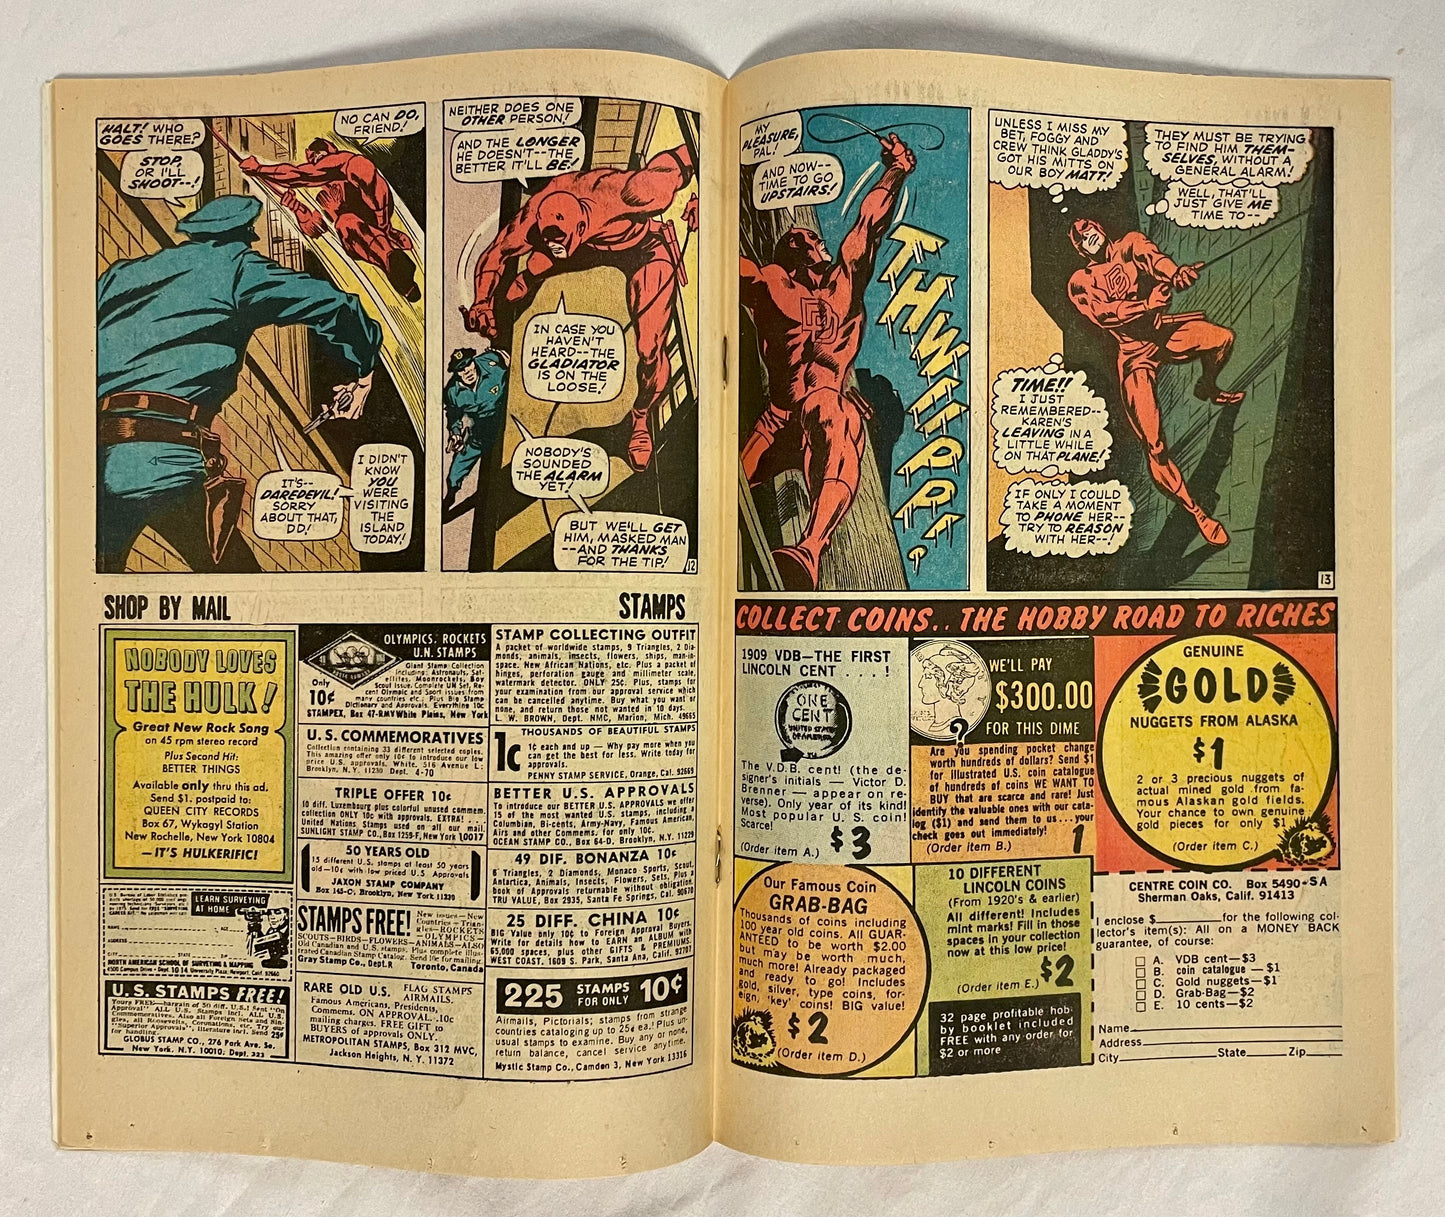 Marvel Comics Daredevil #63